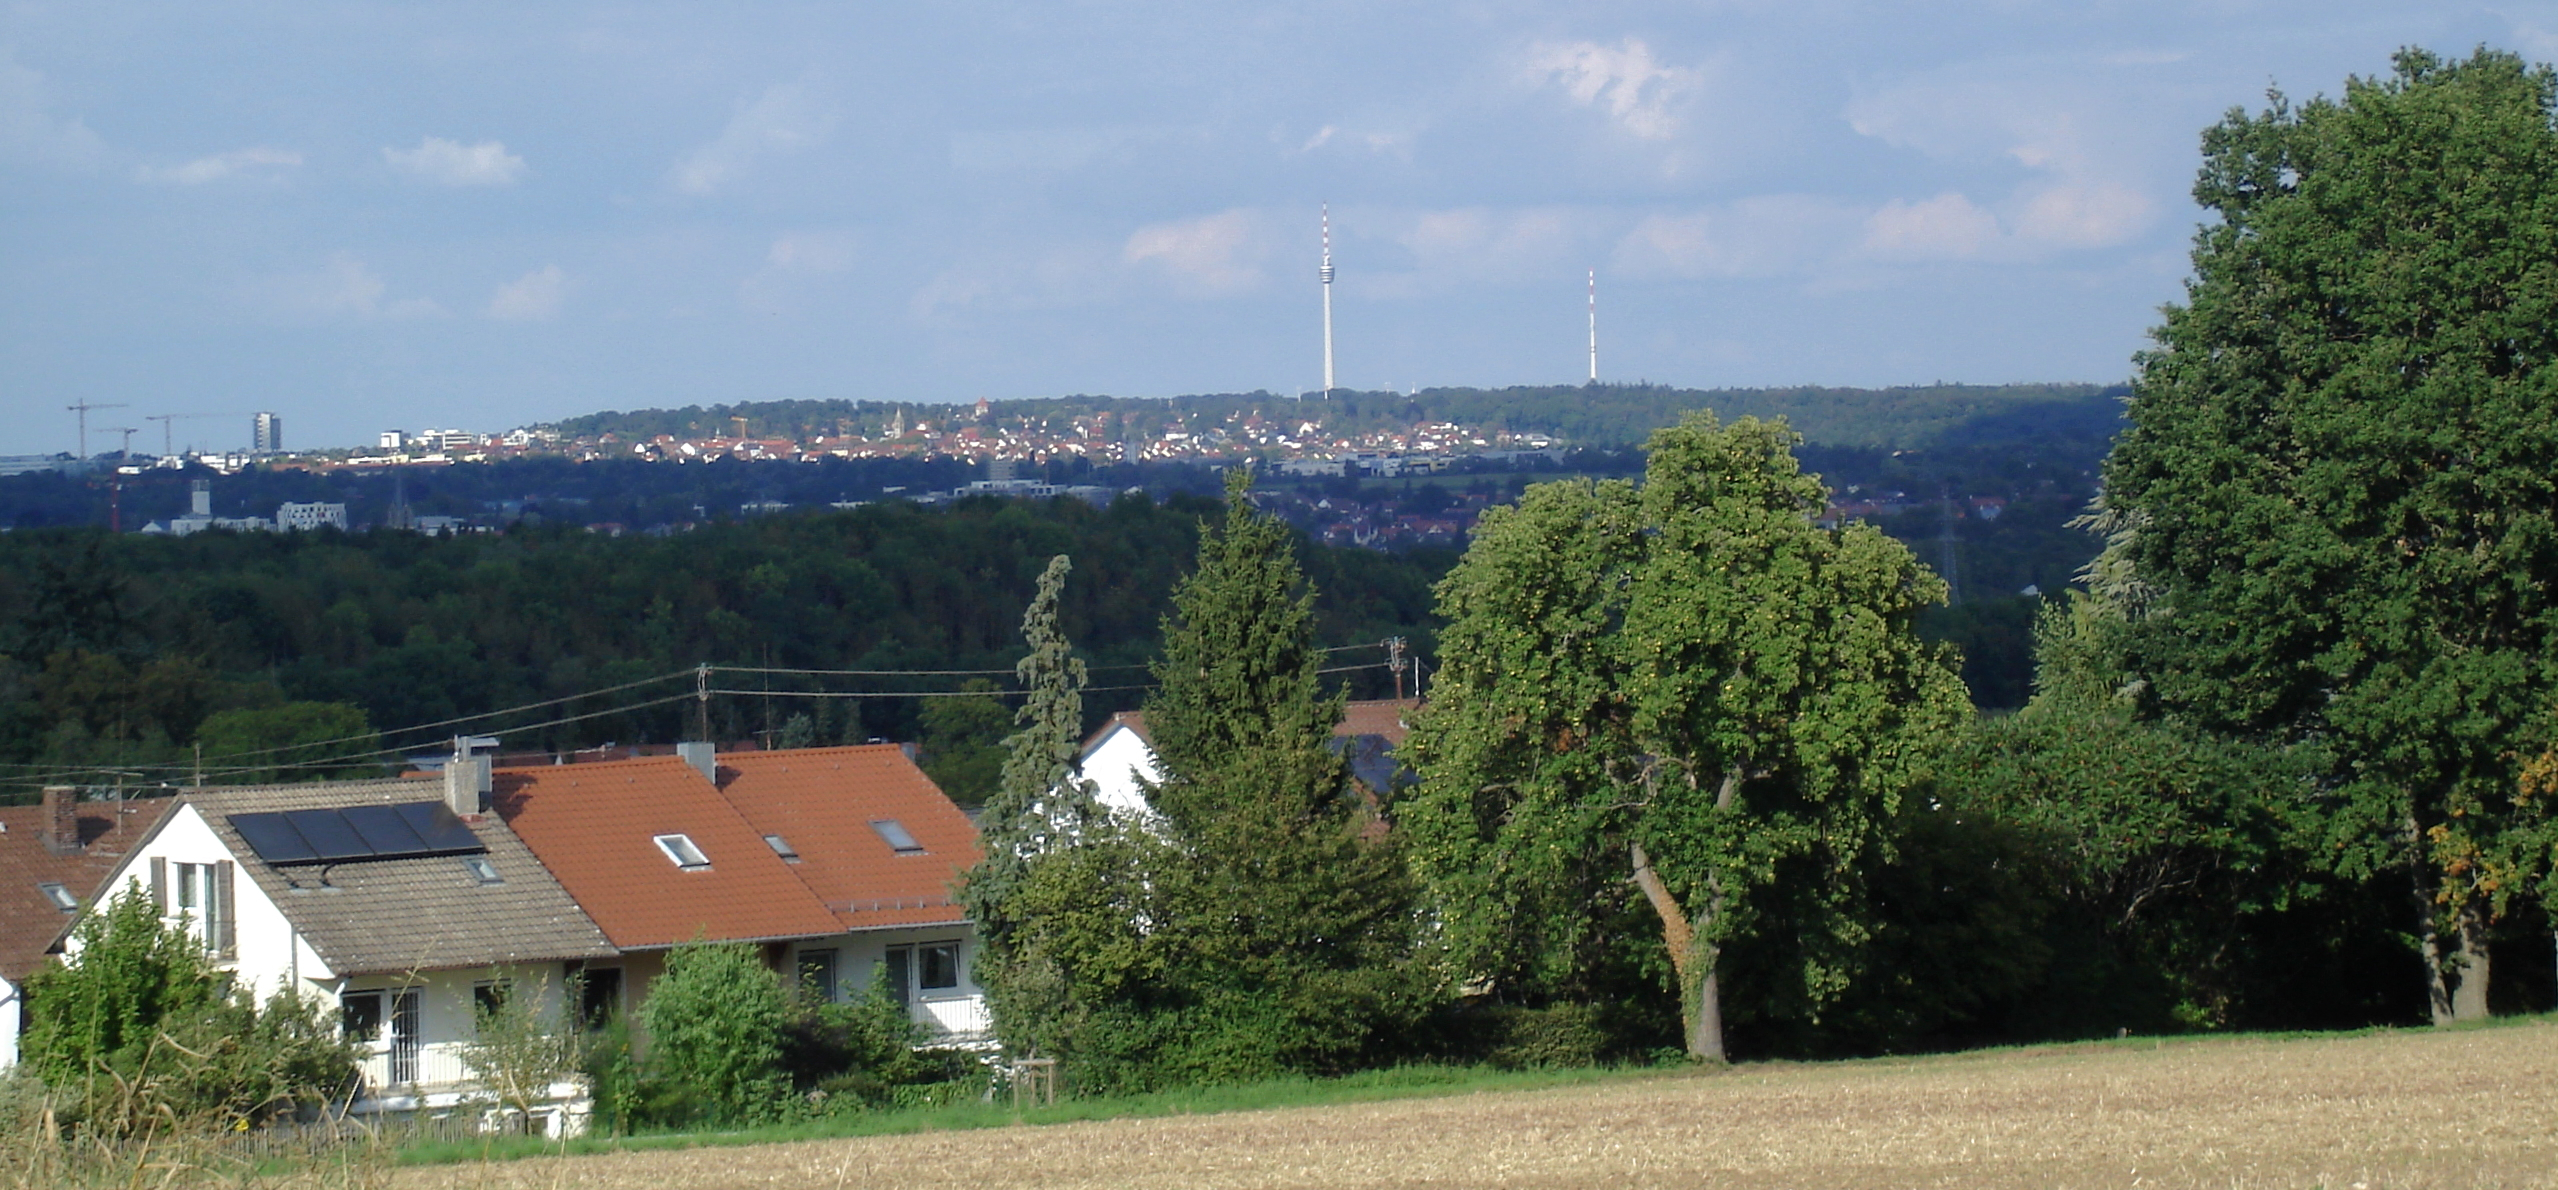 Ein Landschaftsbild, auf dem man in der Ferne den Stuttgarter Fernsehturm sieht